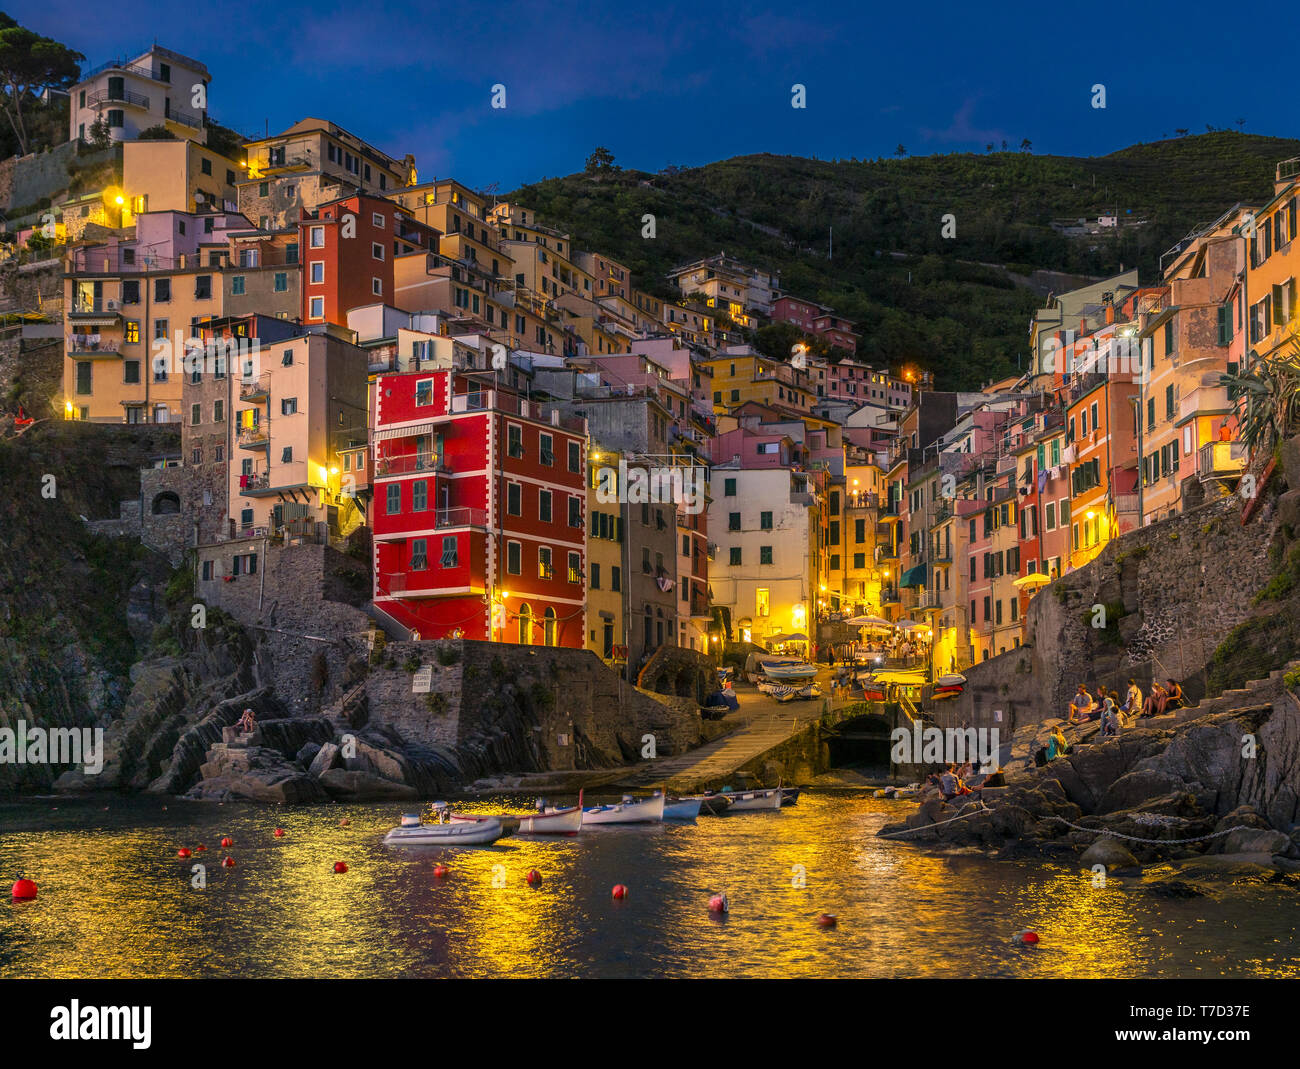 Riomaggiore at night, Cinque Terre, Italy Stock Photo